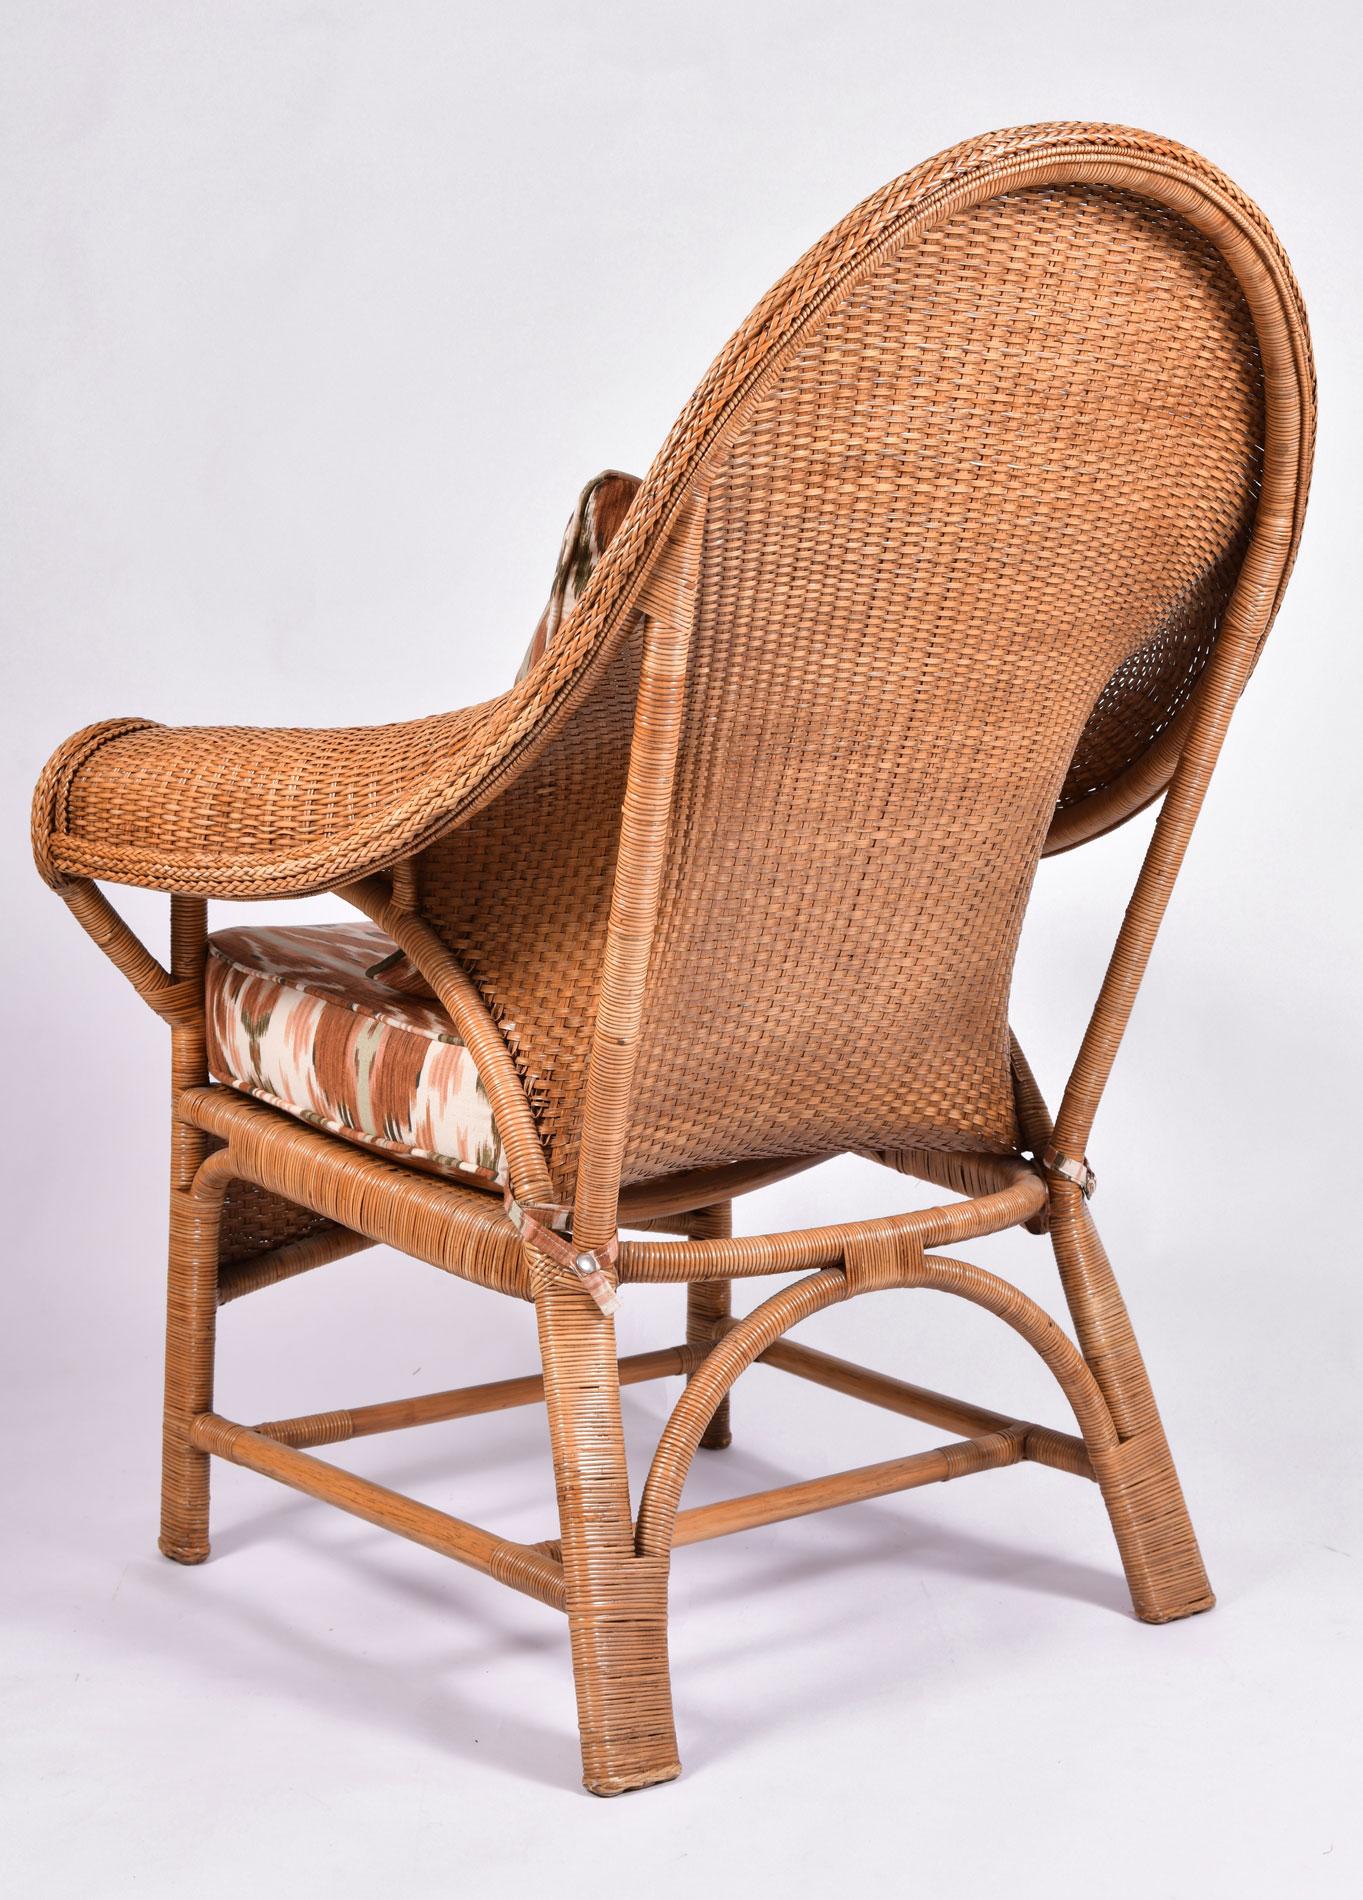 1980s wicker chair